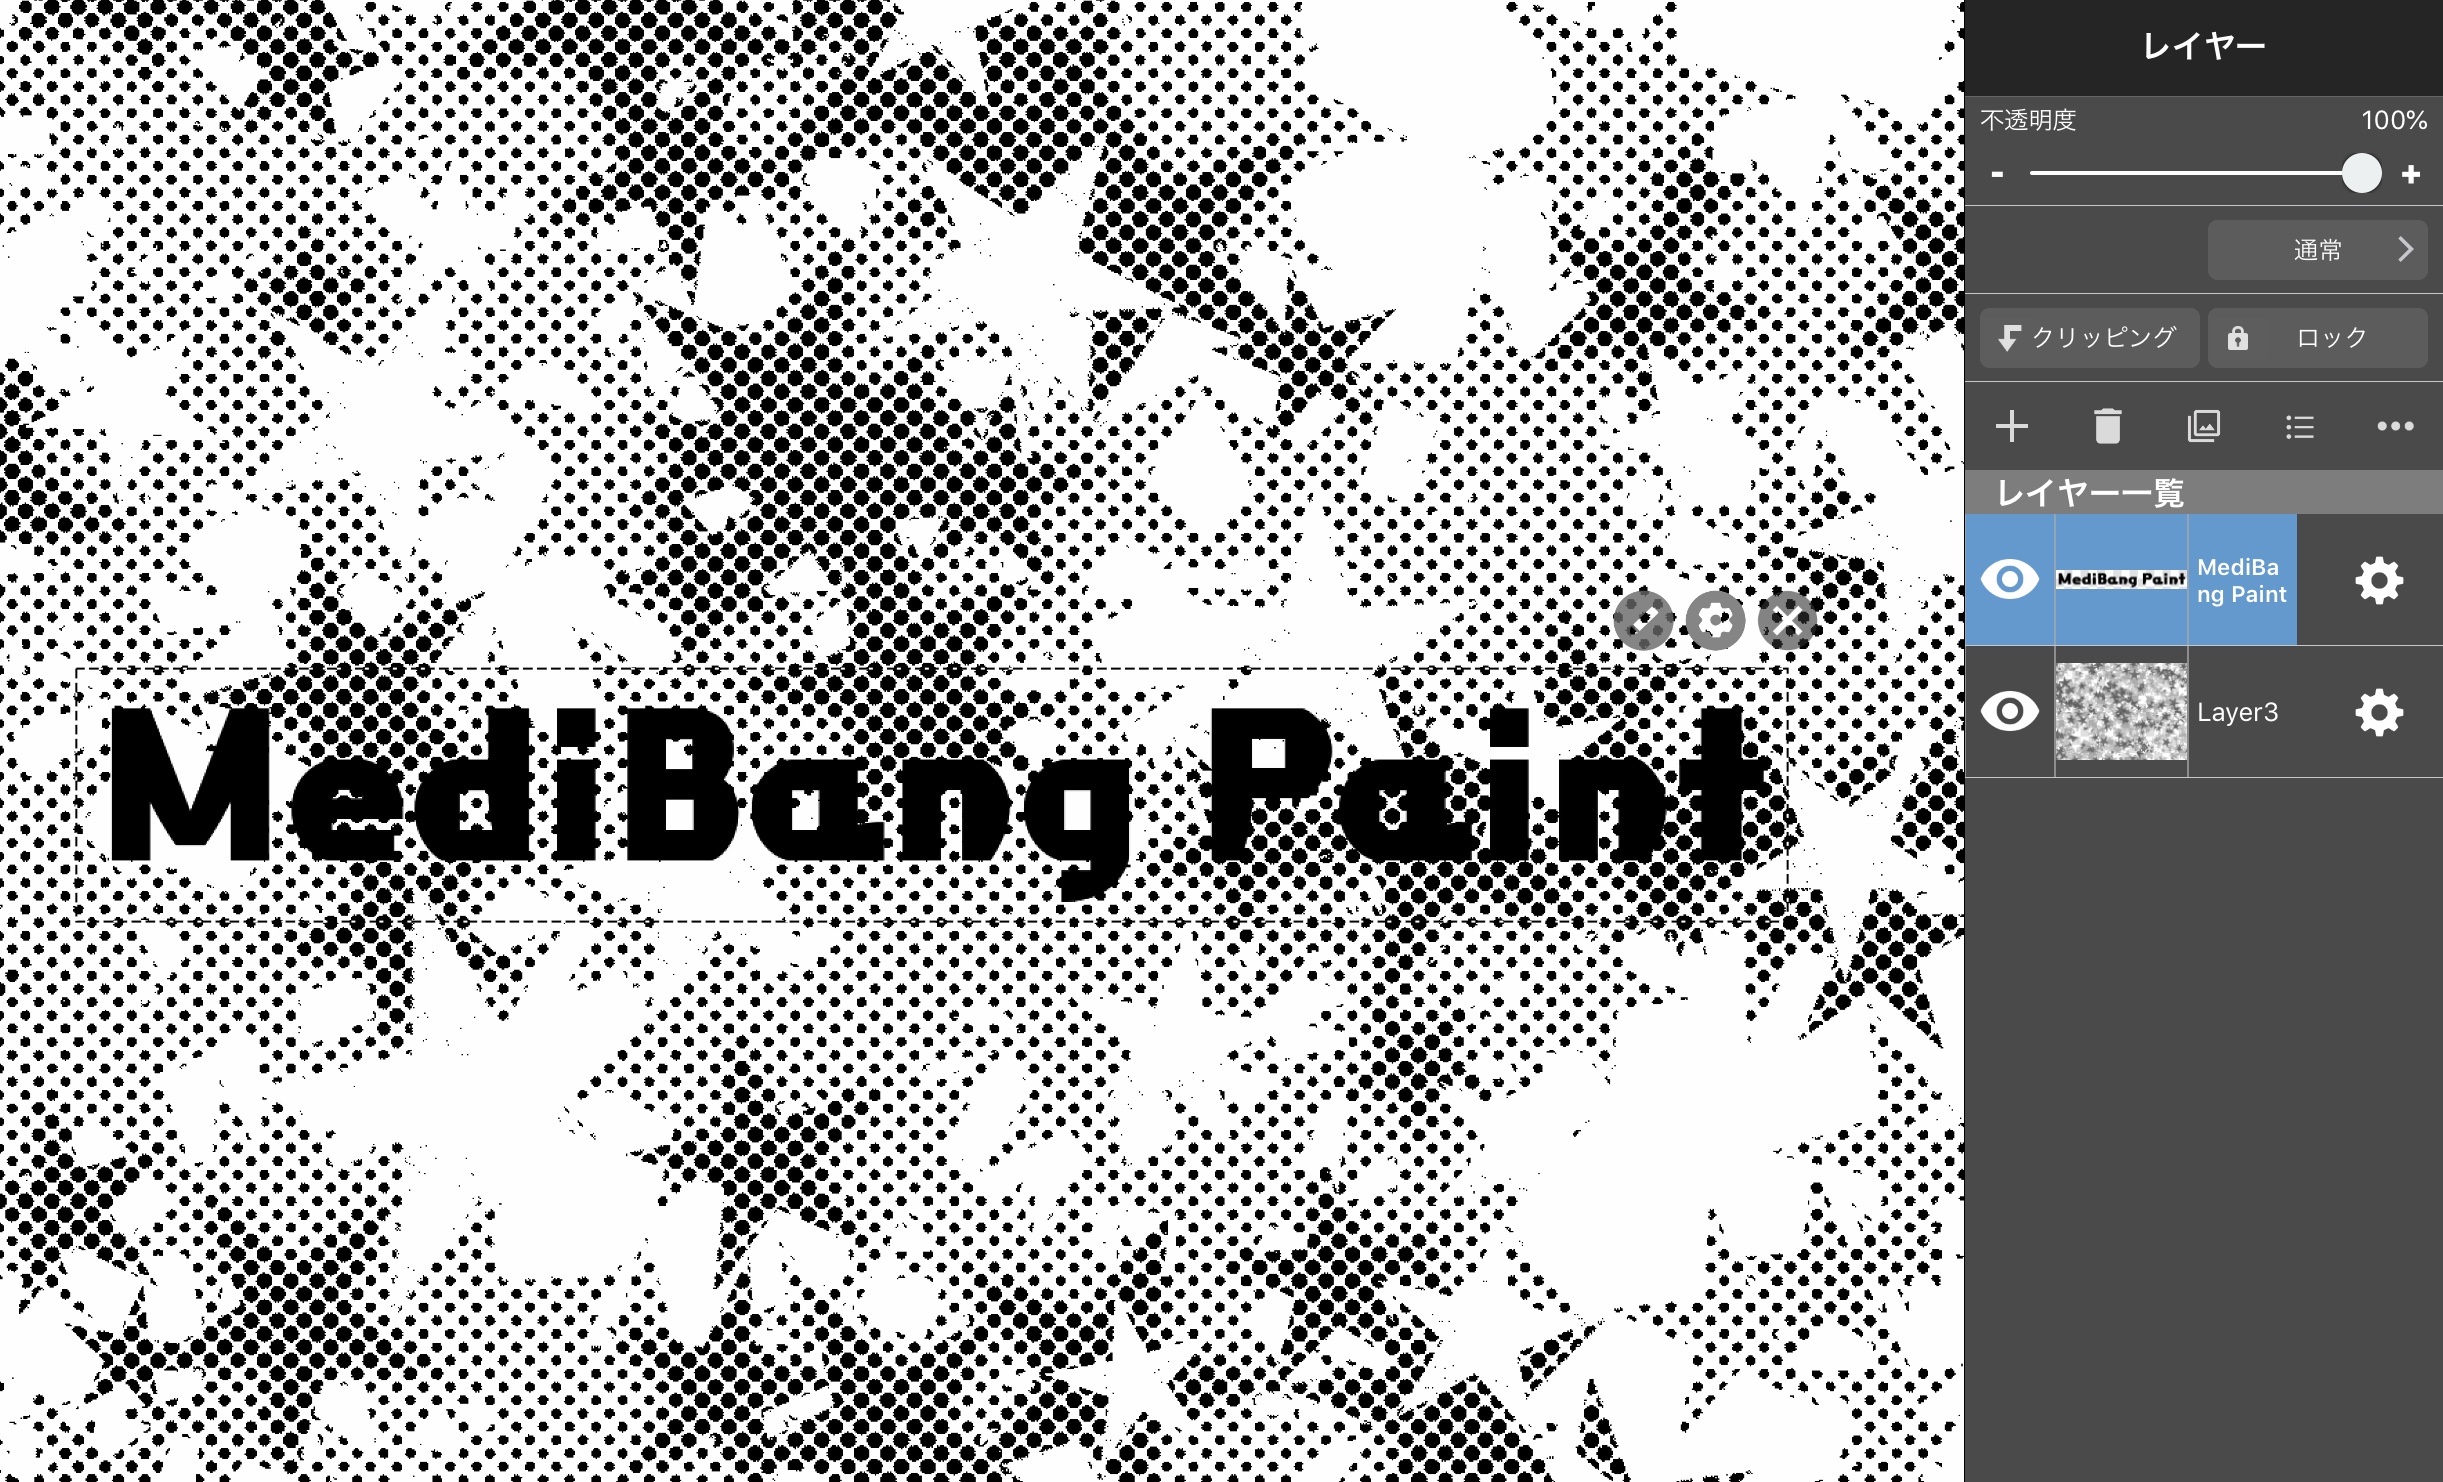 文字を縁取りして見えやすくする方法 メディバンペイント Medibang Paint